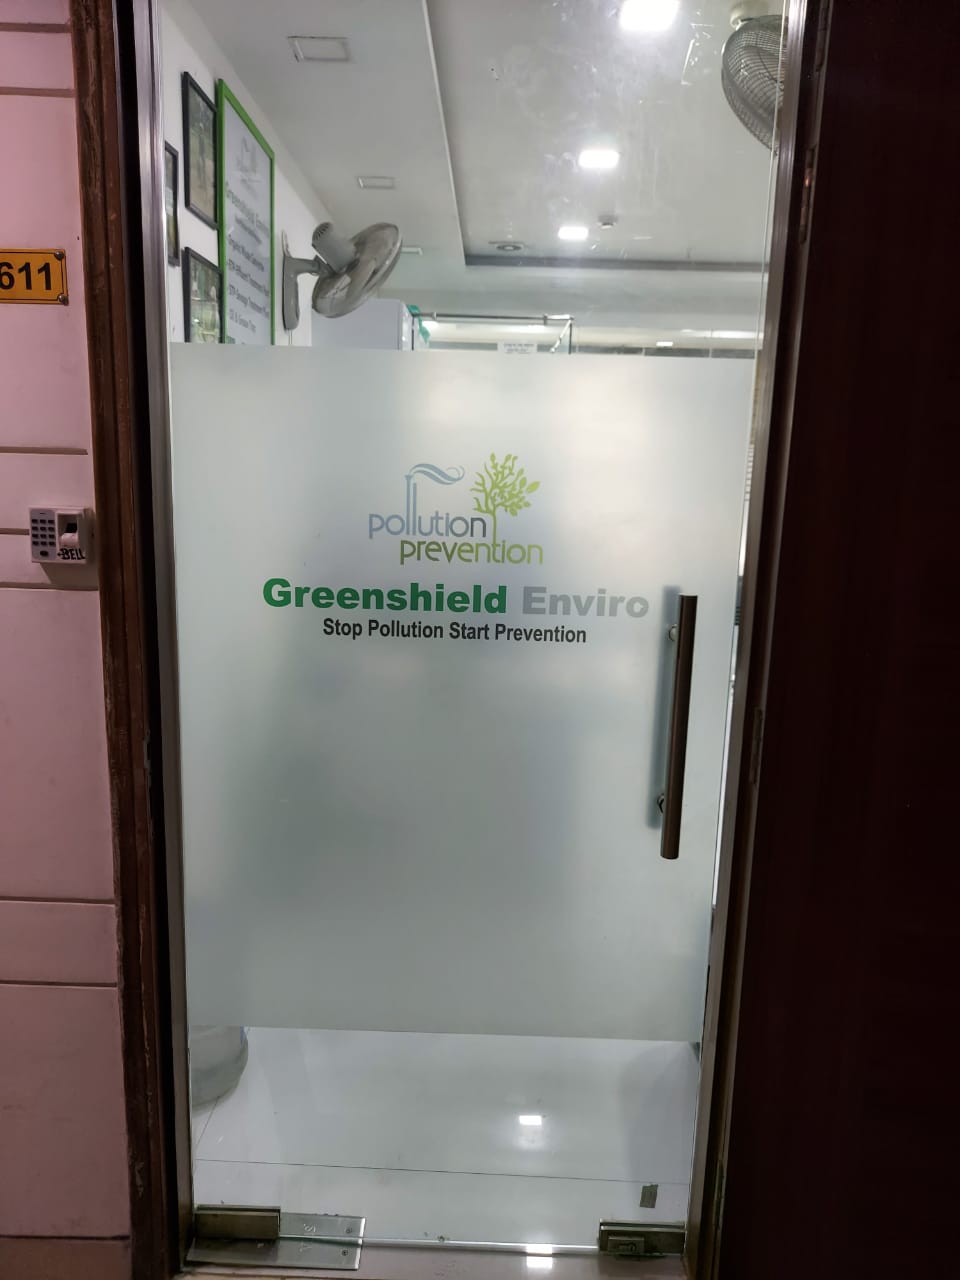 Greenshield enviro office